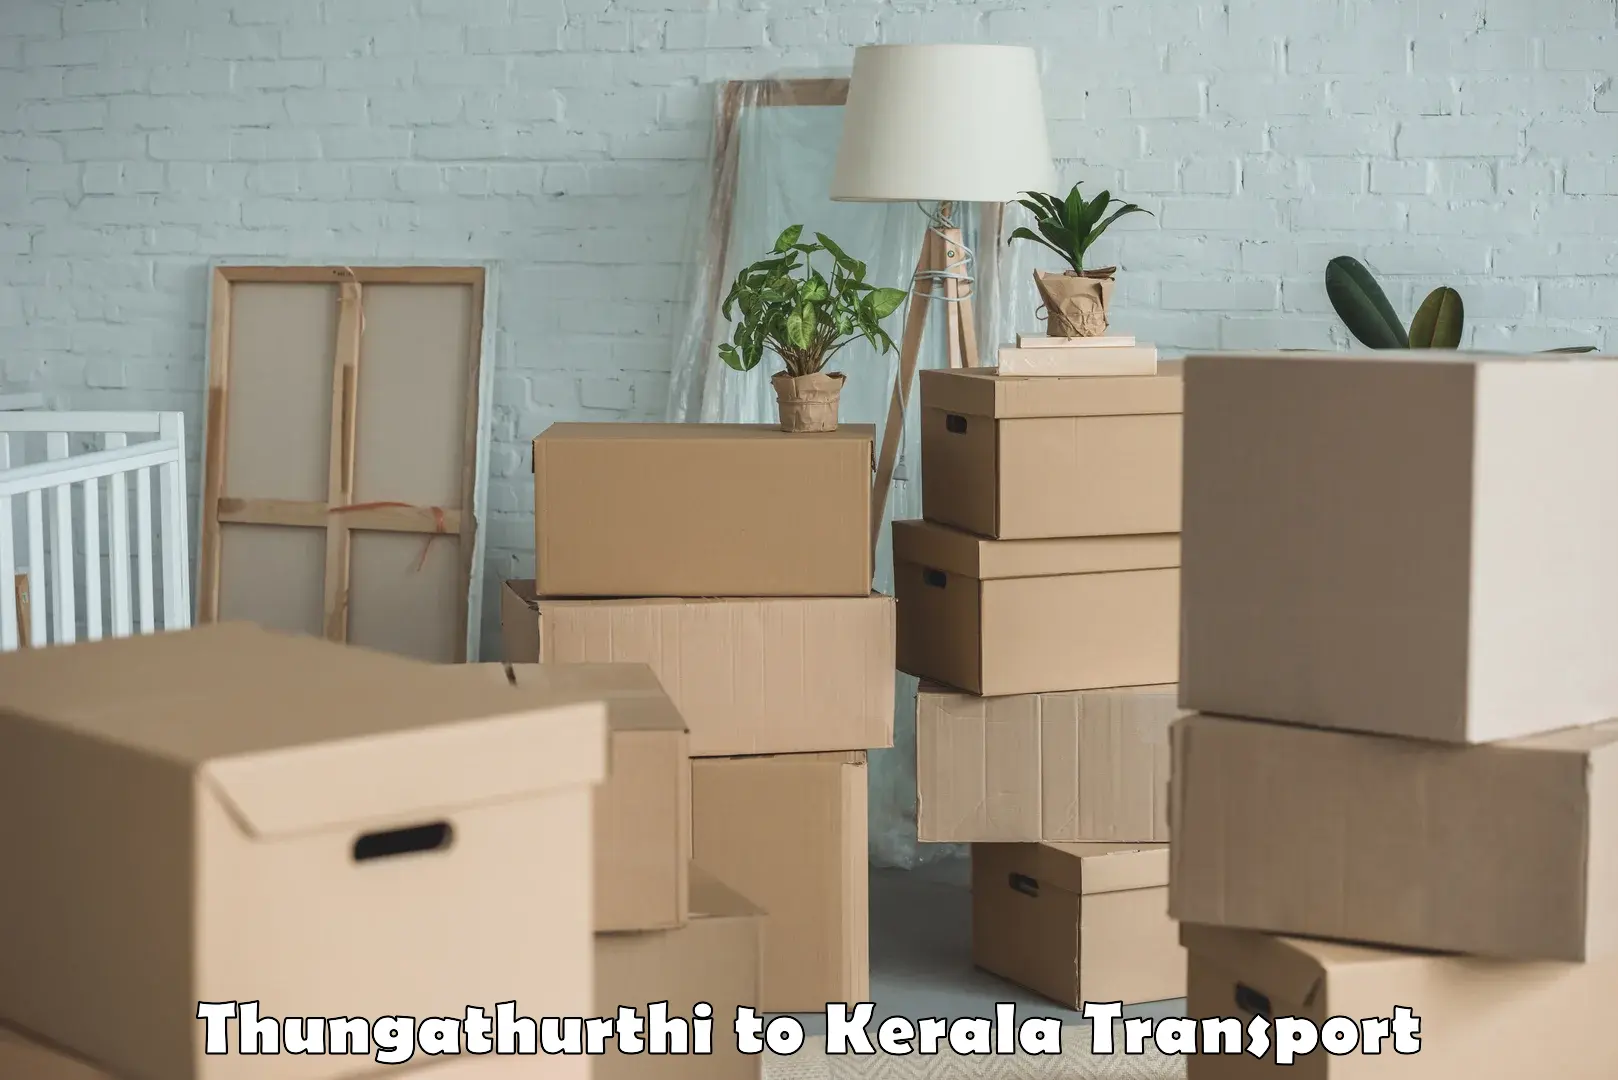 Transport in sharing Thungathurthi to Kakkayam